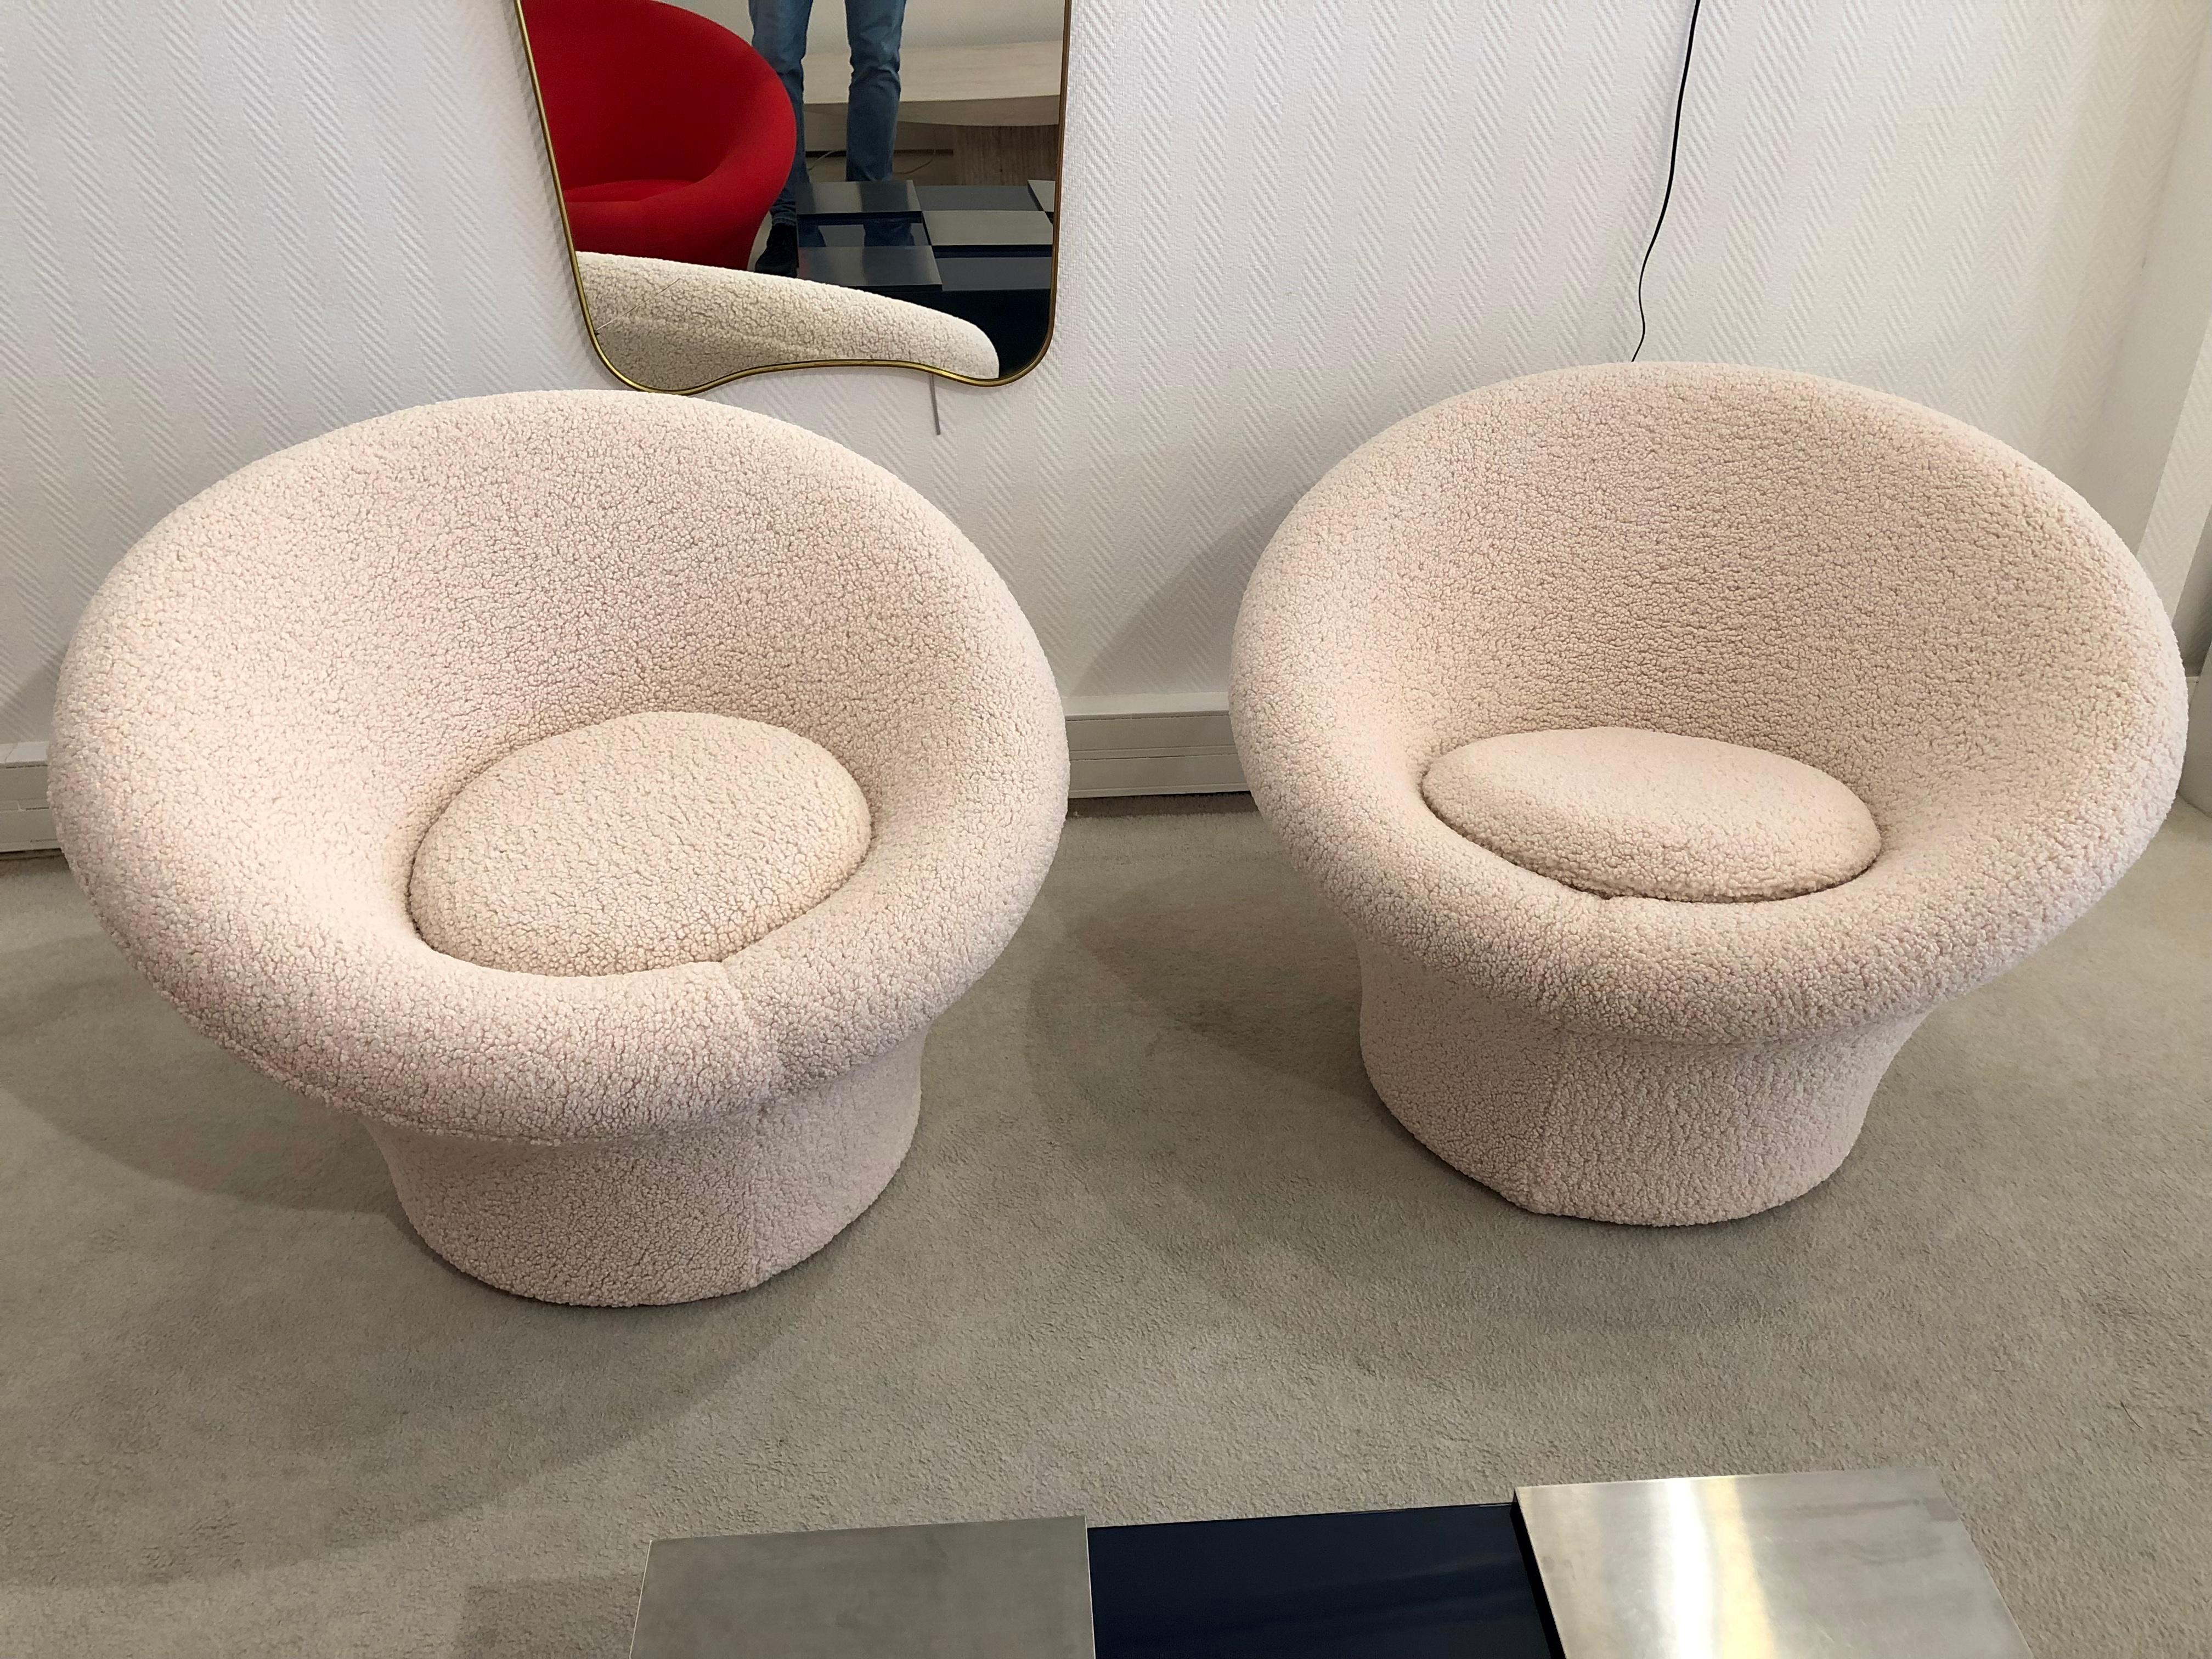 Paar pilzförmige Sessel von Pierre Paulin 
für Artifort 1960er Jahre.